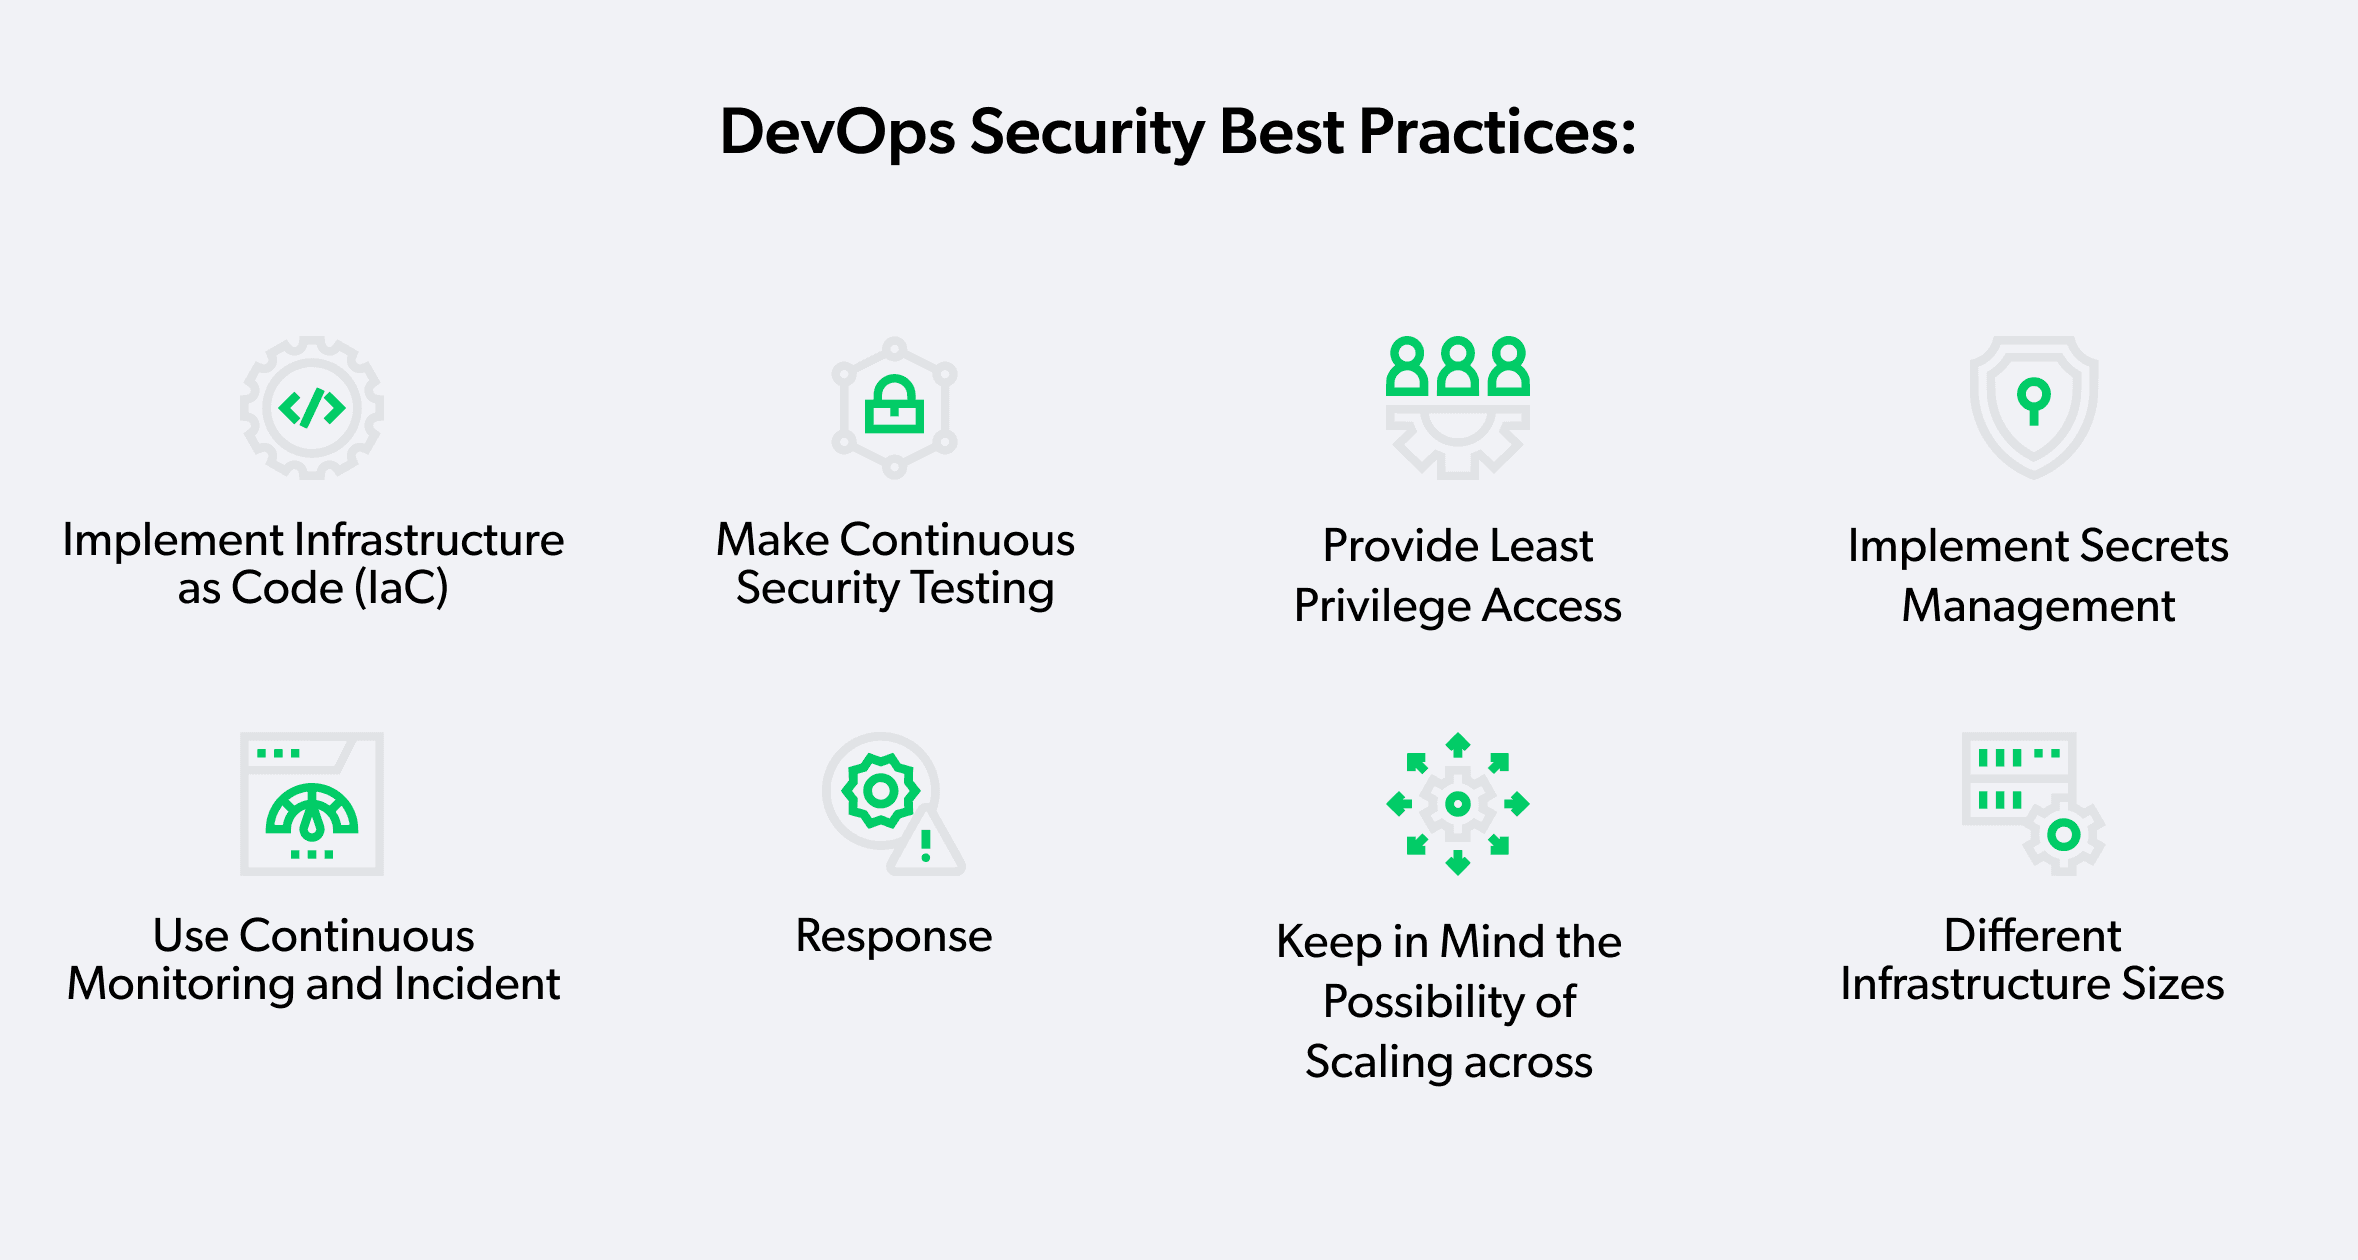 DevOps security best practices